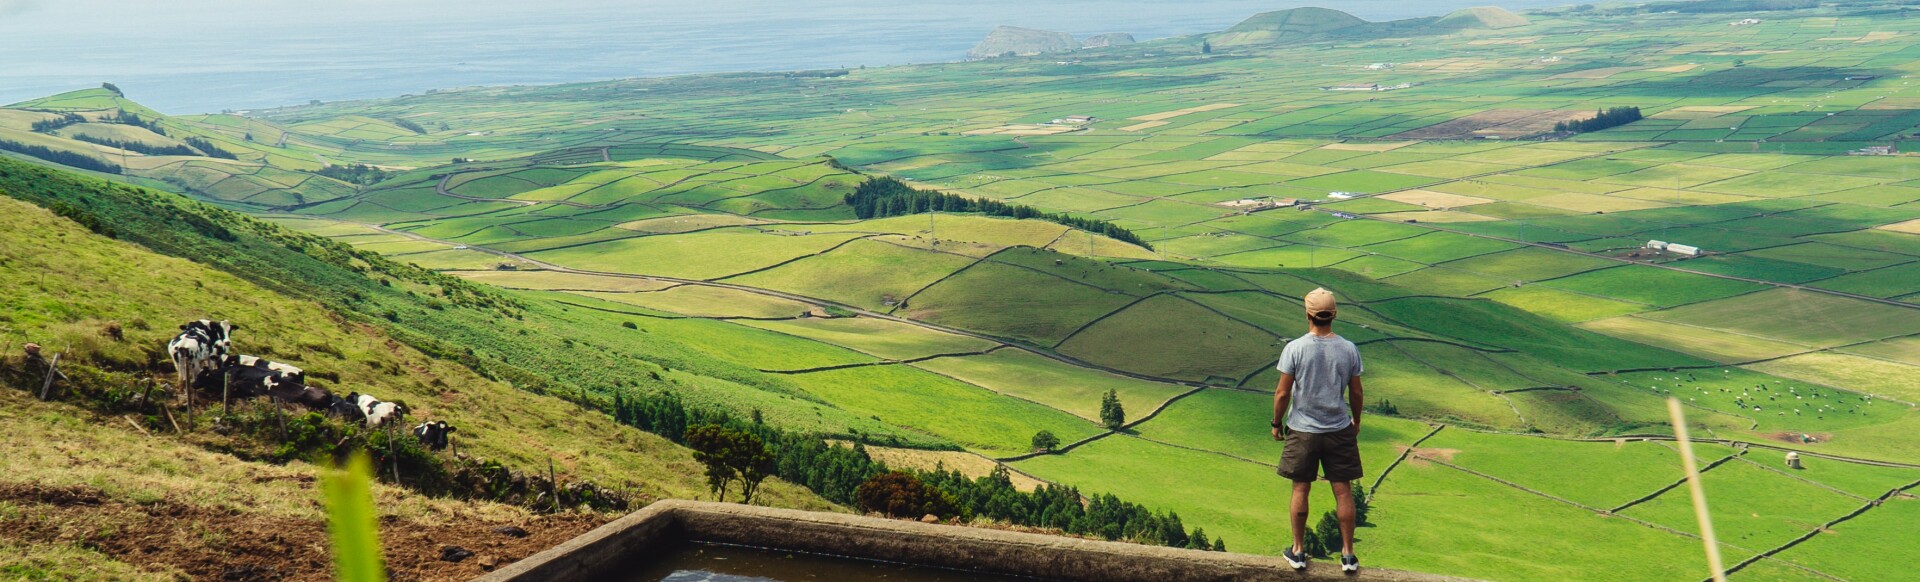 pessoa a ver a paisagem dos Açores